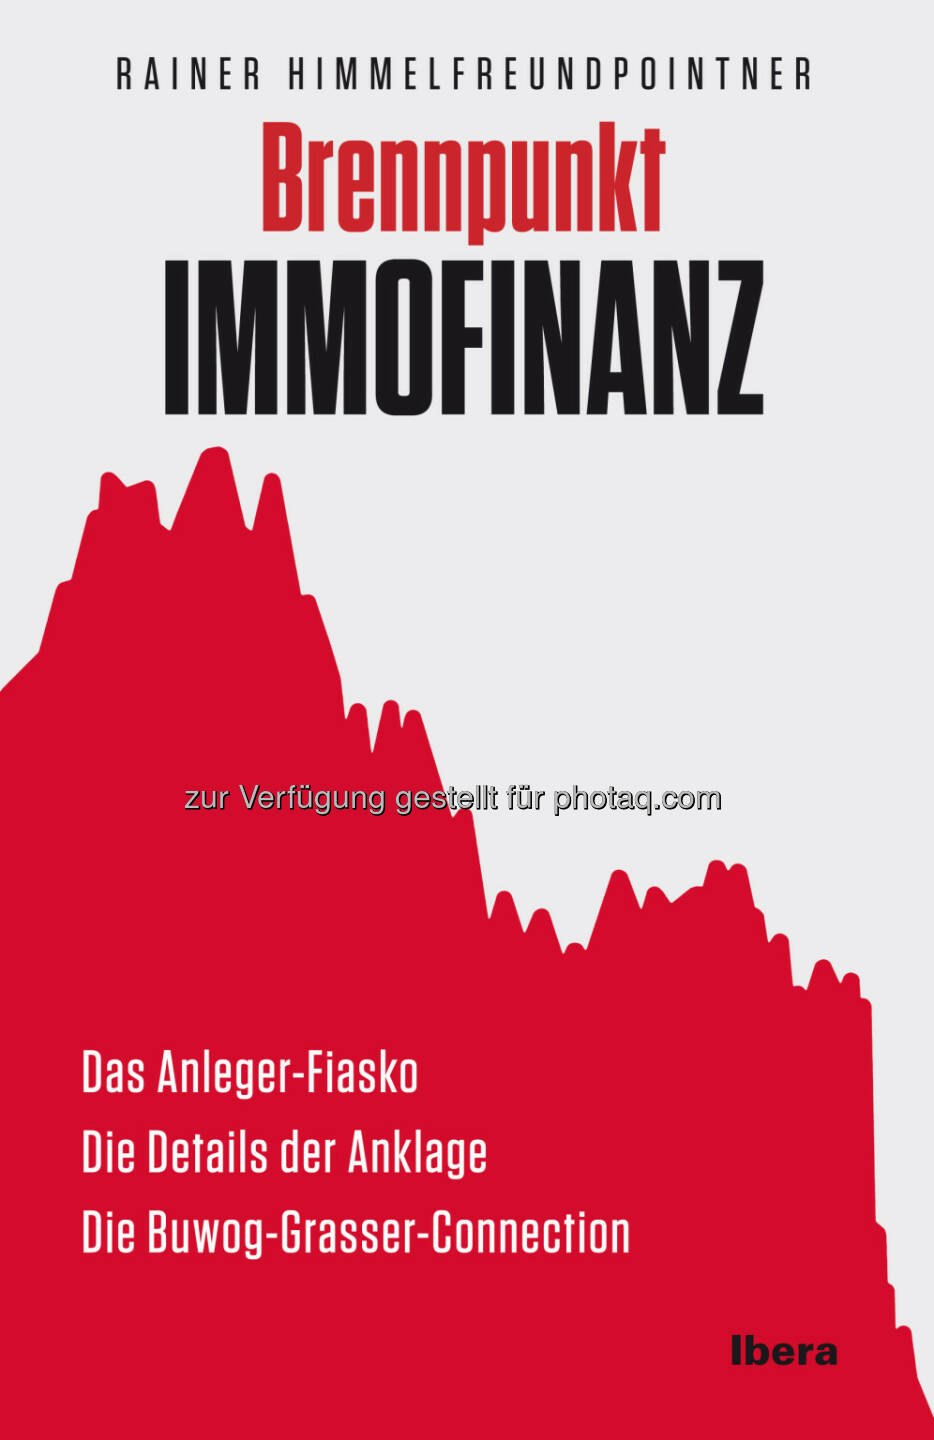 Brennpunkt Immofinanz: Über (vergangene) Fiasko-Deals und den Weg zum stinknormalen Unternehmen, schreibt Rainer Himmelfreundpointner. Schnellrezension hier: http://www.christian-drastil.com/2013/01/14/morgen-brennpunkt-immofinanz-tag-was-zu-erwarten-ist-lesen-sie-hier/